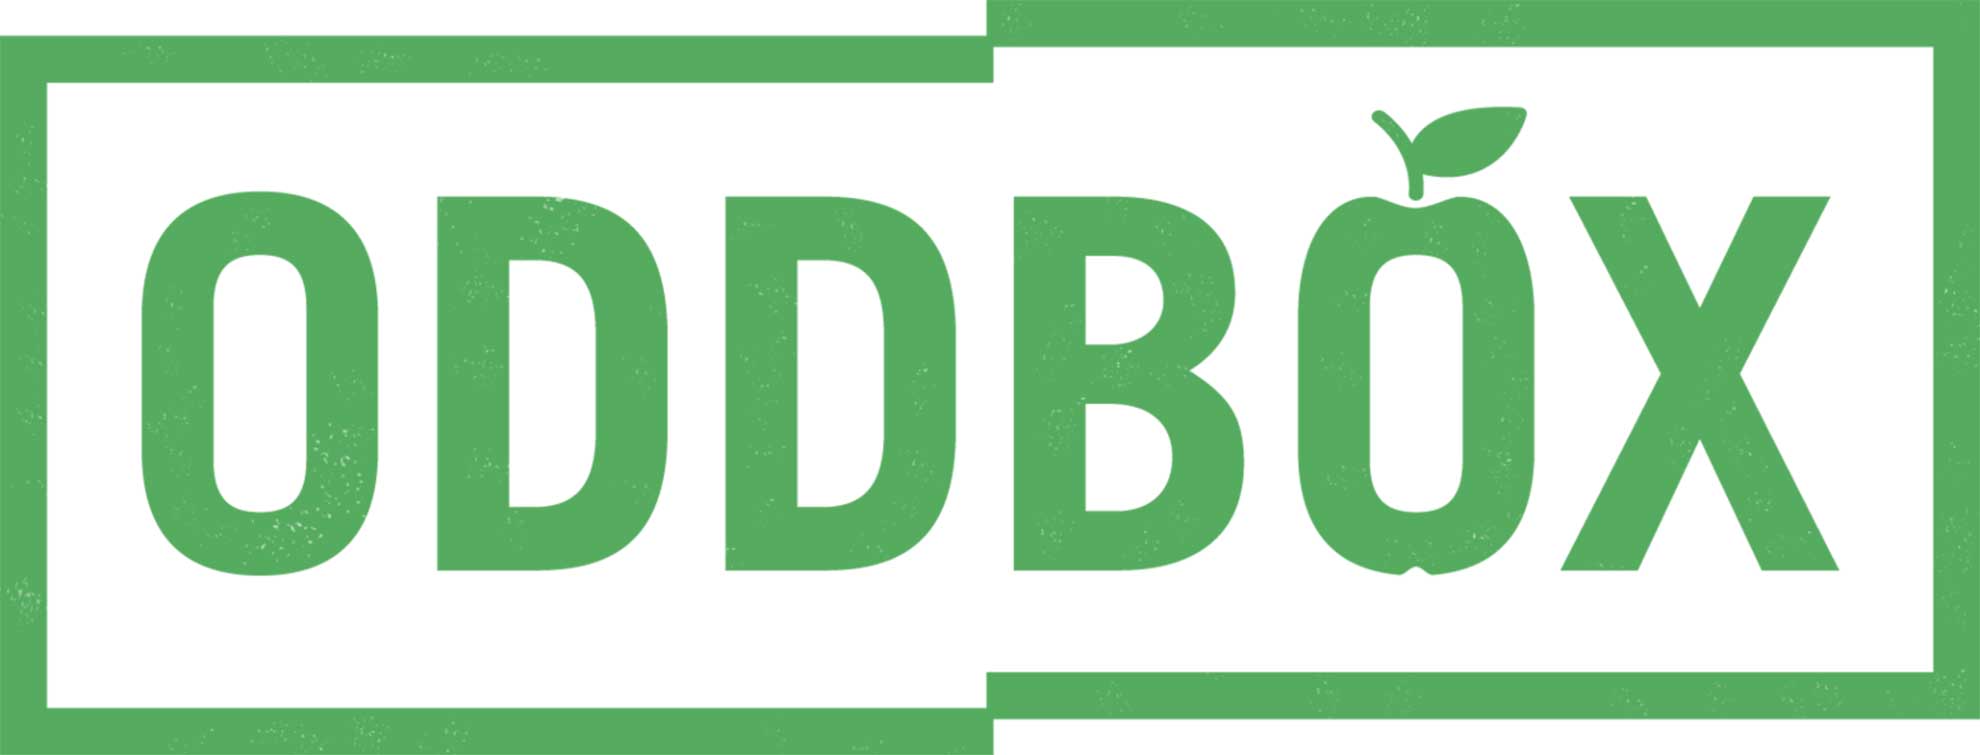 Oddbox Logo